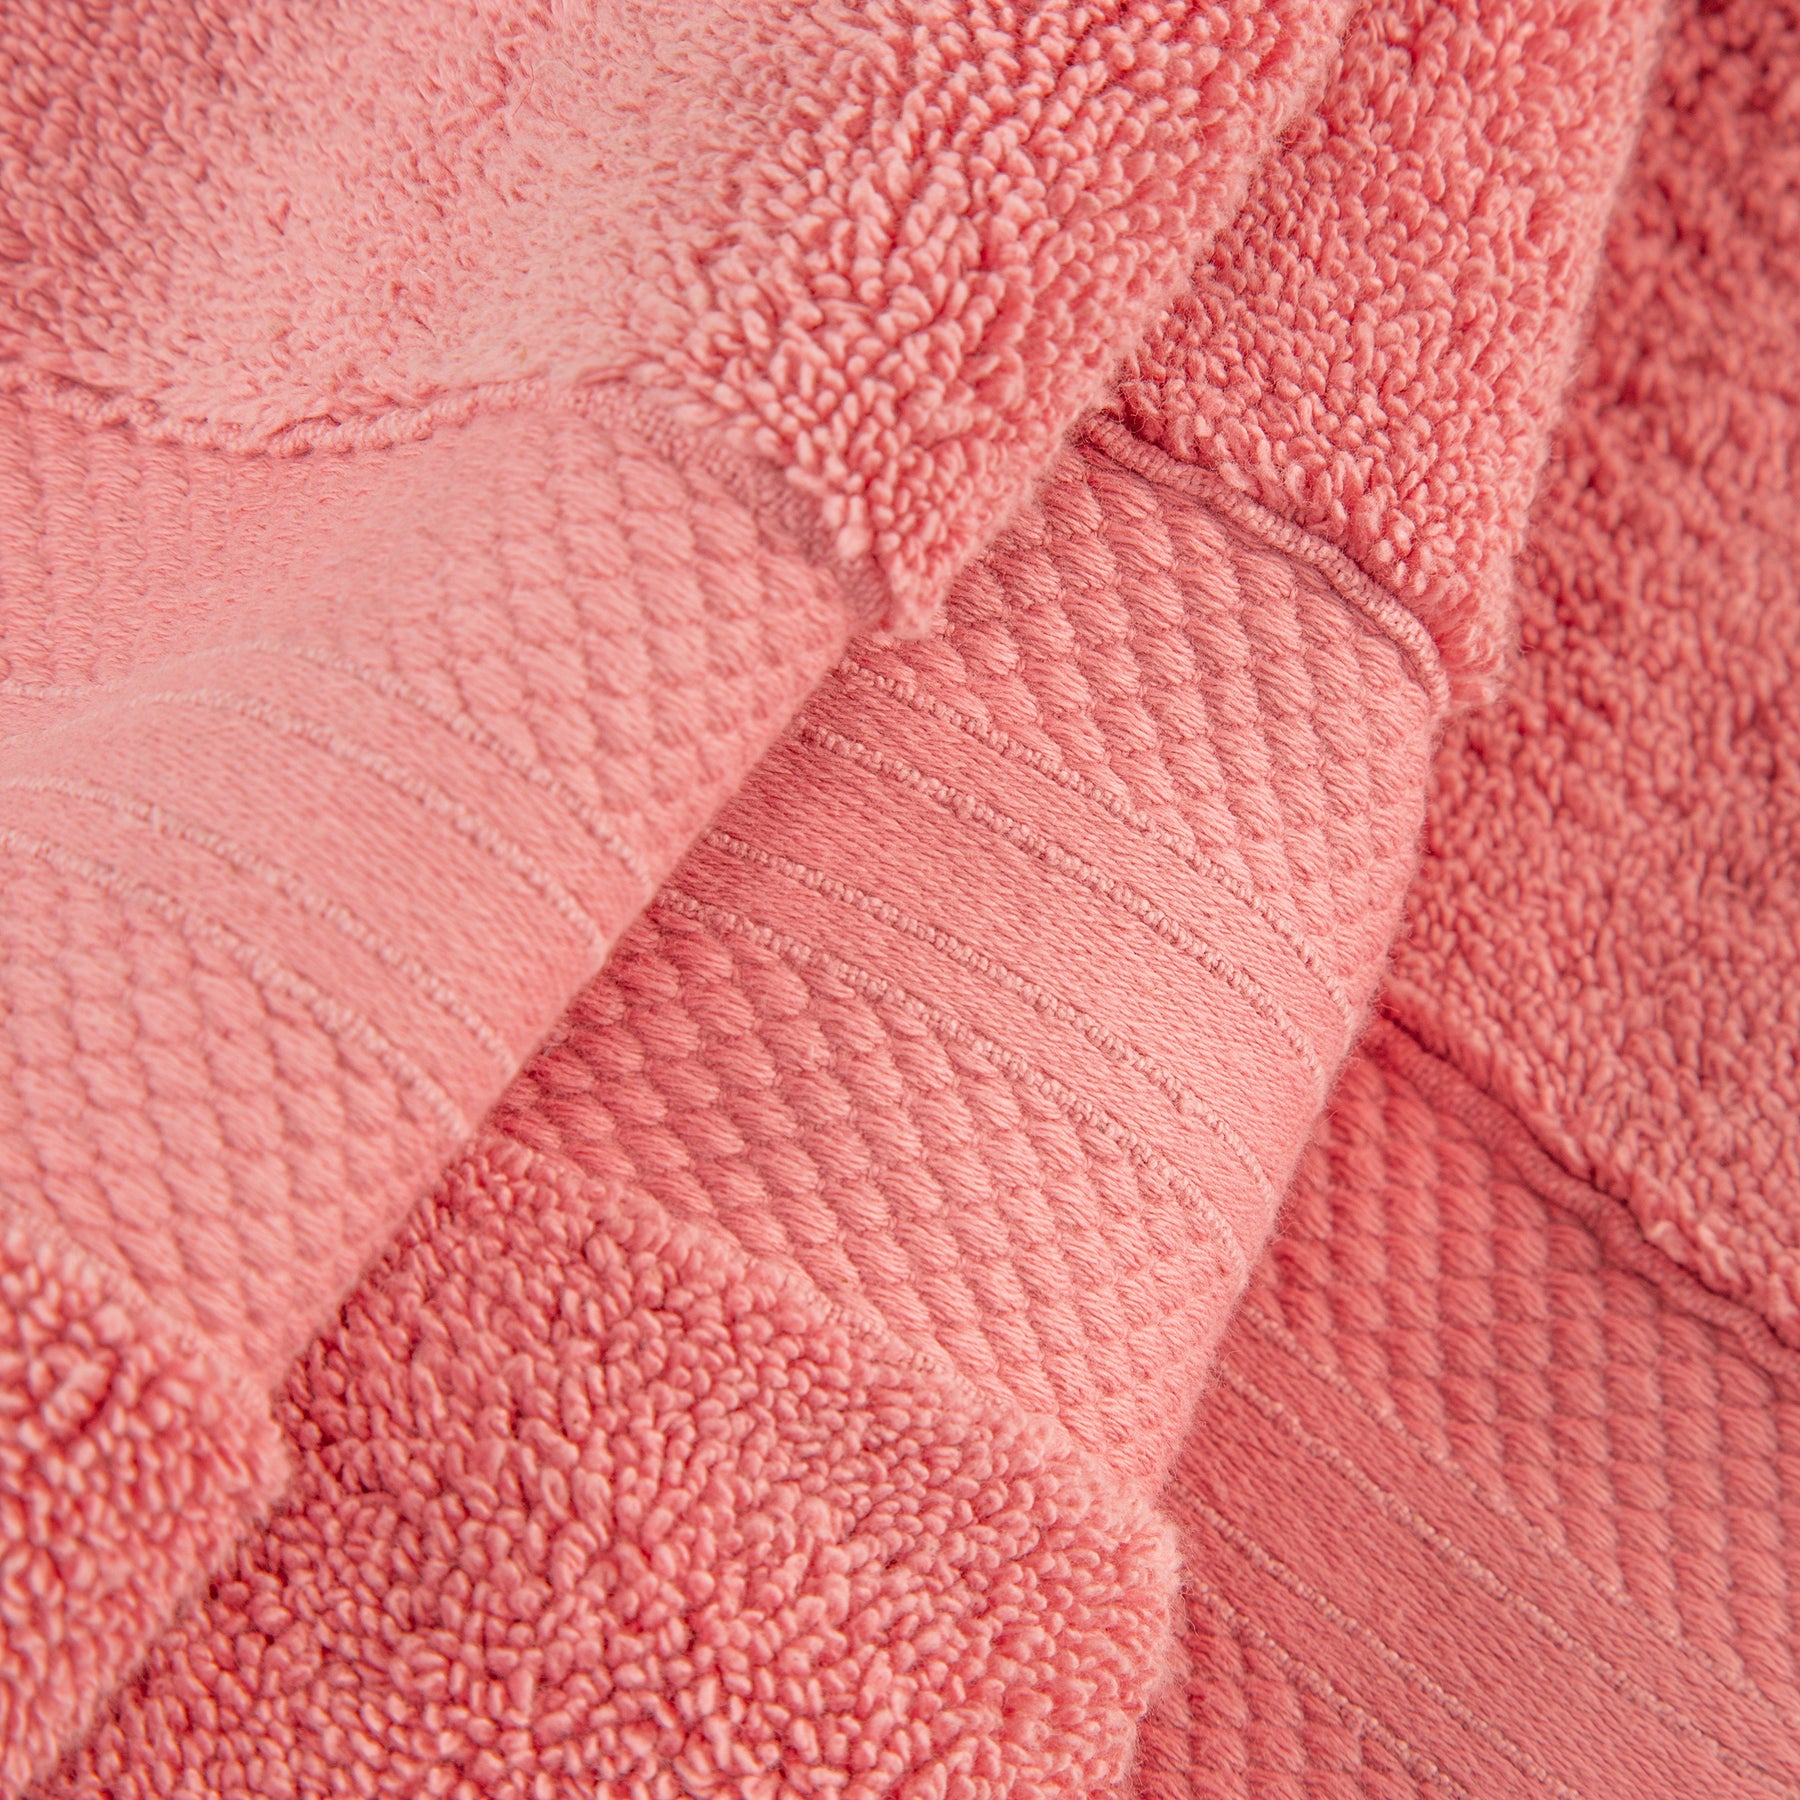 Superior Premium Turkish-Cotton Assorted Towel Set - Coral